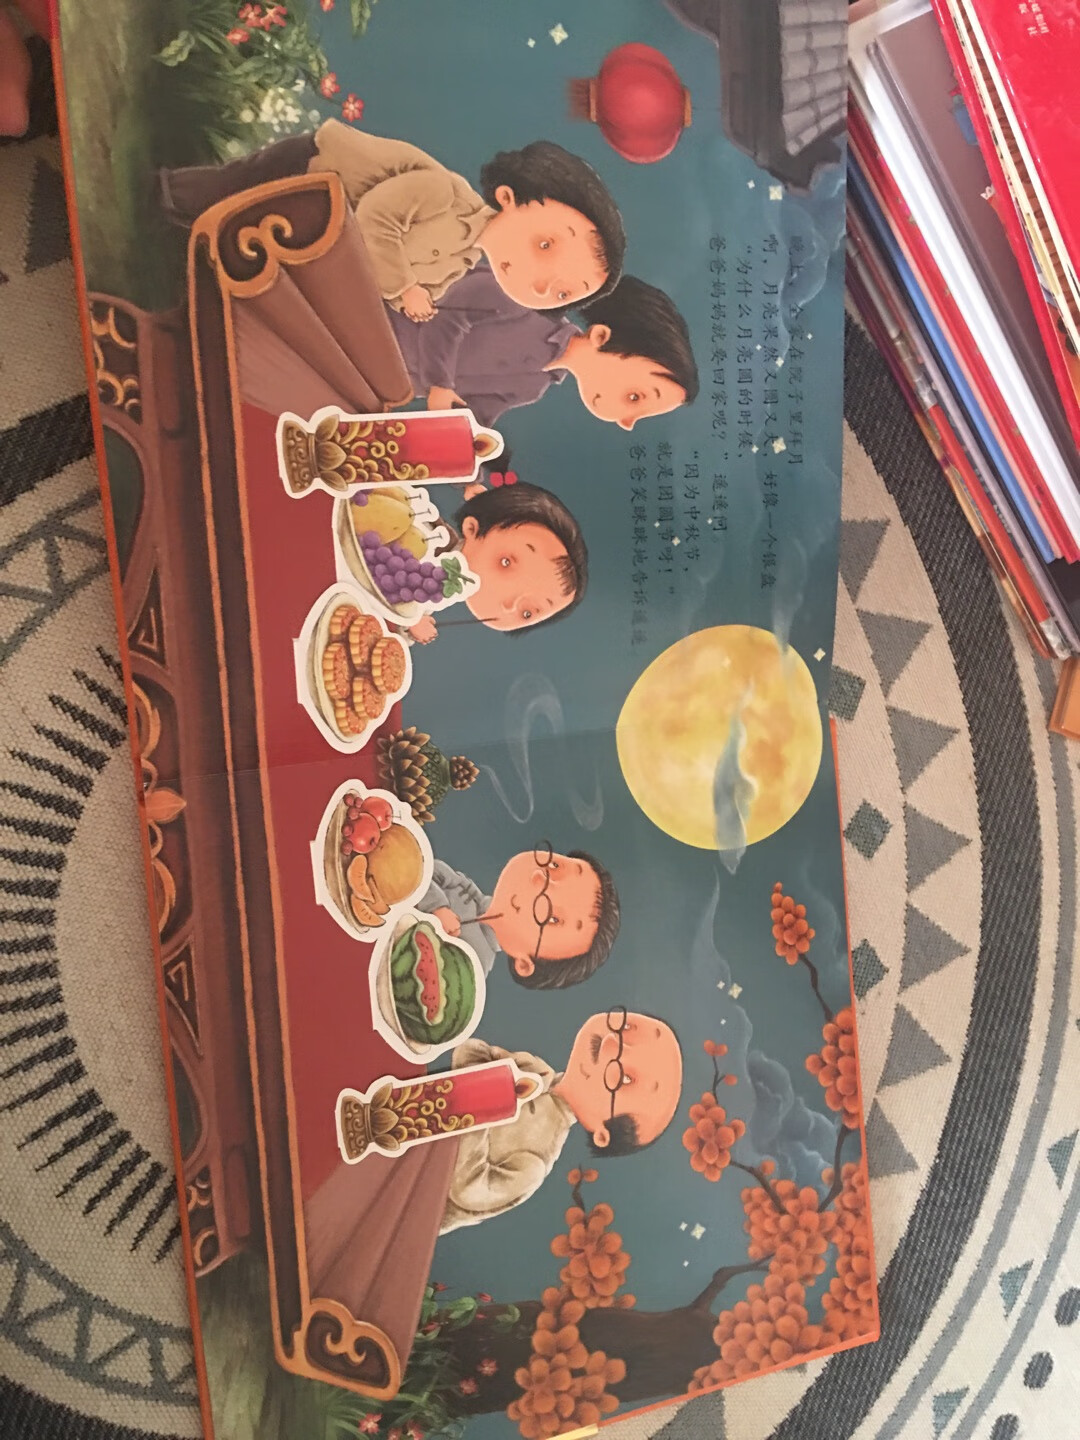 书上向孩子们介绍了中国传统节日的由来和习俗，丰富传统文化知识的同时，立体页又增添了许多趣味性。读完书还可以和宝宝一起做节日特色美食。非常有趣